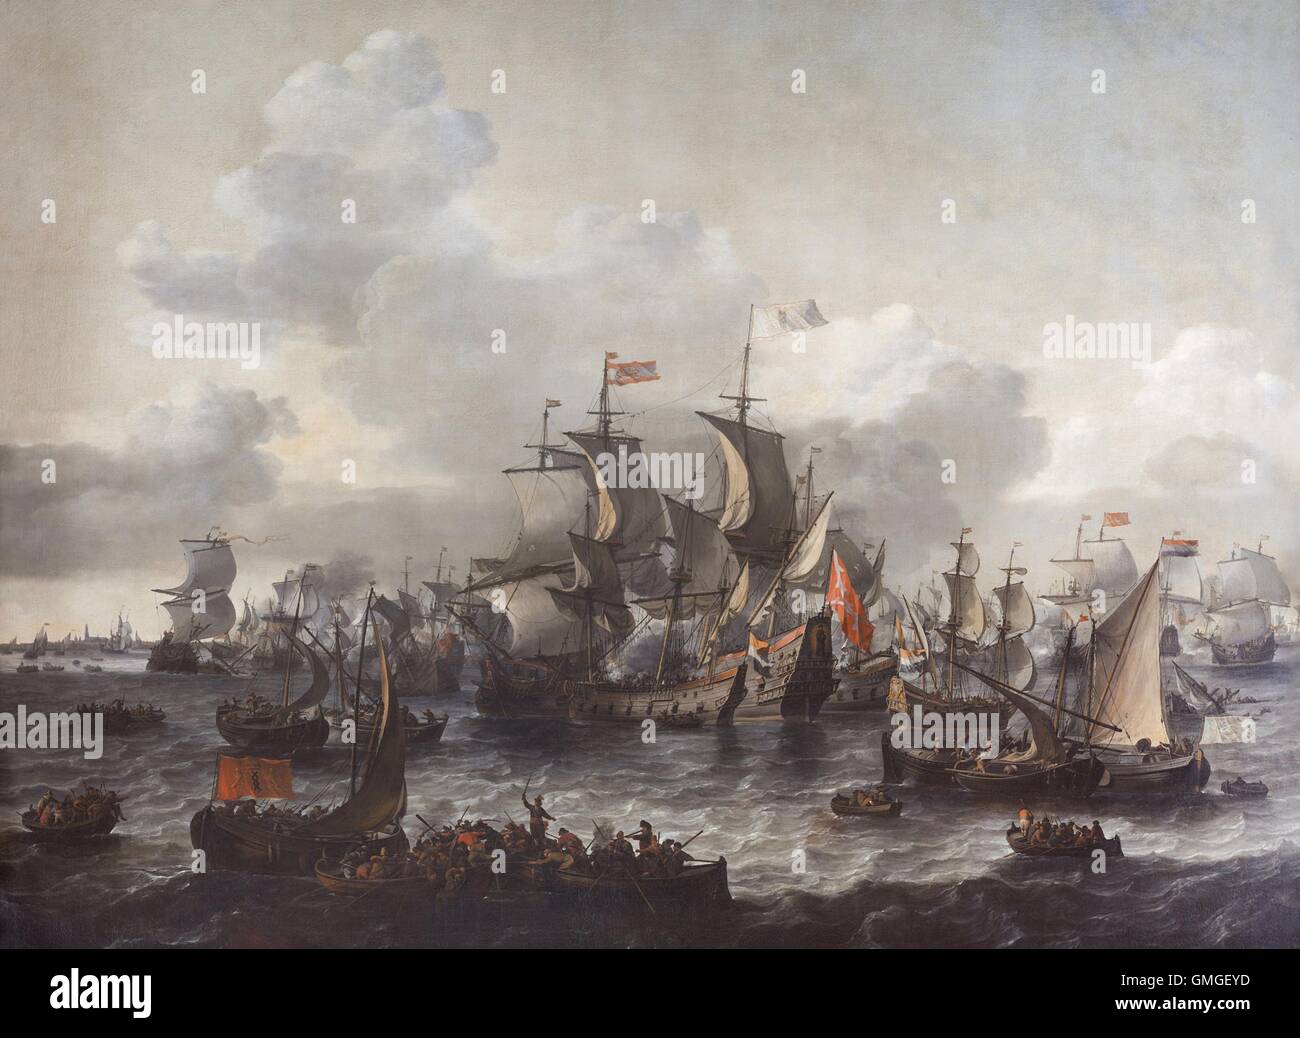 Der Kampf der Zuidersee, 1573 von Jan Blanckerhoff und Johannes Kinnema, 1663, niederländische Malerei, Öl auf Leinwand. Am 11 Oktober 1573 zerstört die niederländische Flotte eine größere und besser ausgestattete spanische Flotte. Bild zeigt die Holländer einsteigen Graf Boussu (BSLOC 2016 6 280) Stockfoto